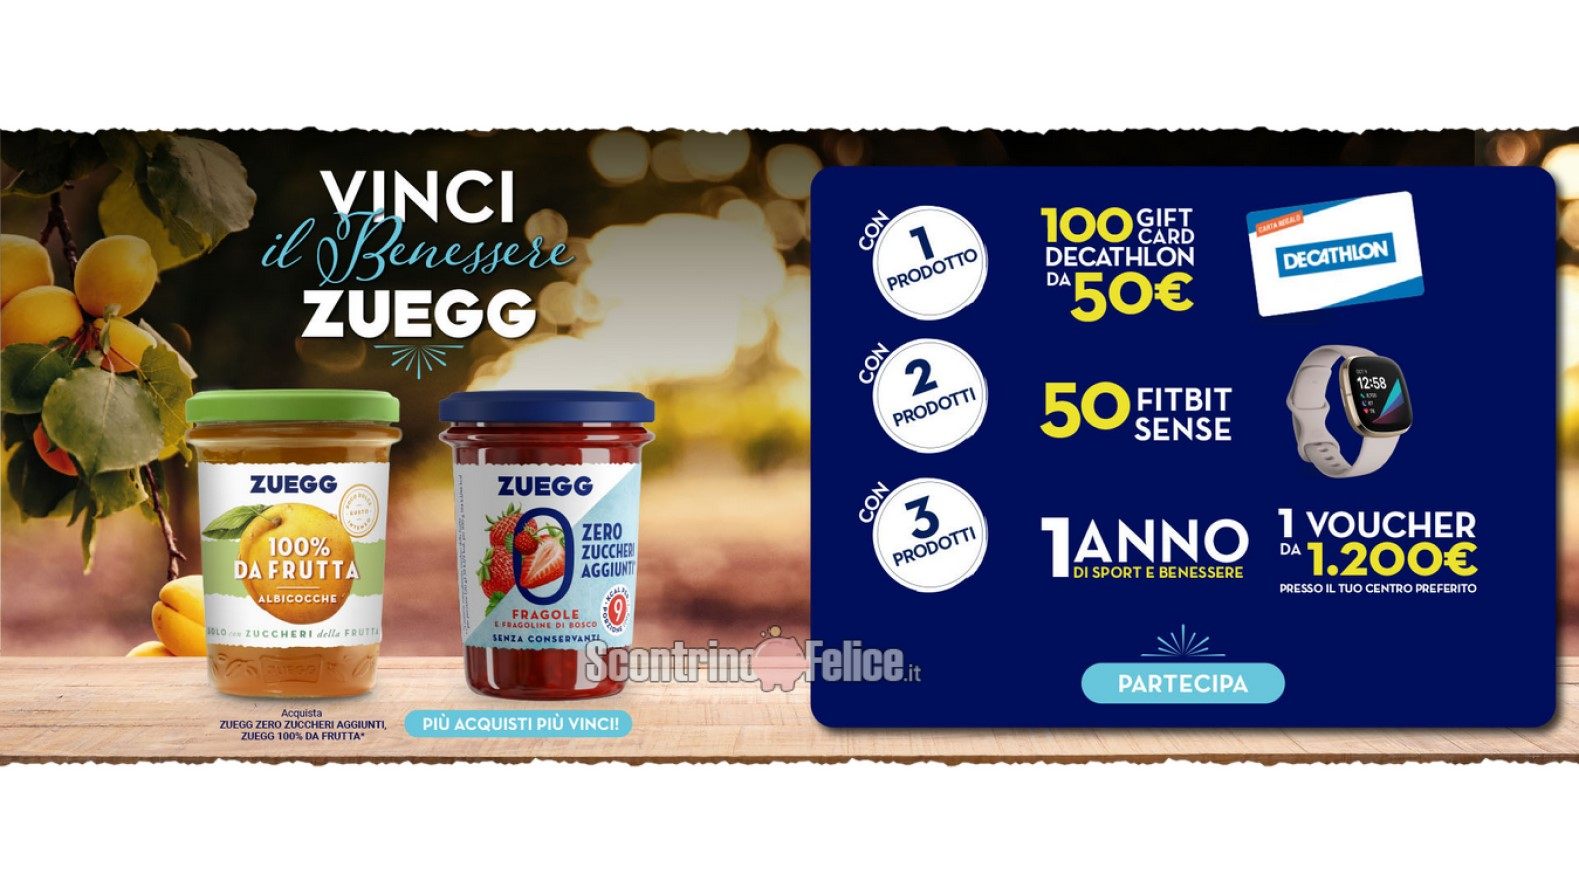 Concorso "Vinci il benessere con Zuegg": in palio Gift Card Decathlon da 50€, smartwatch Fitbit Sense e Voucher Sport&Benessere